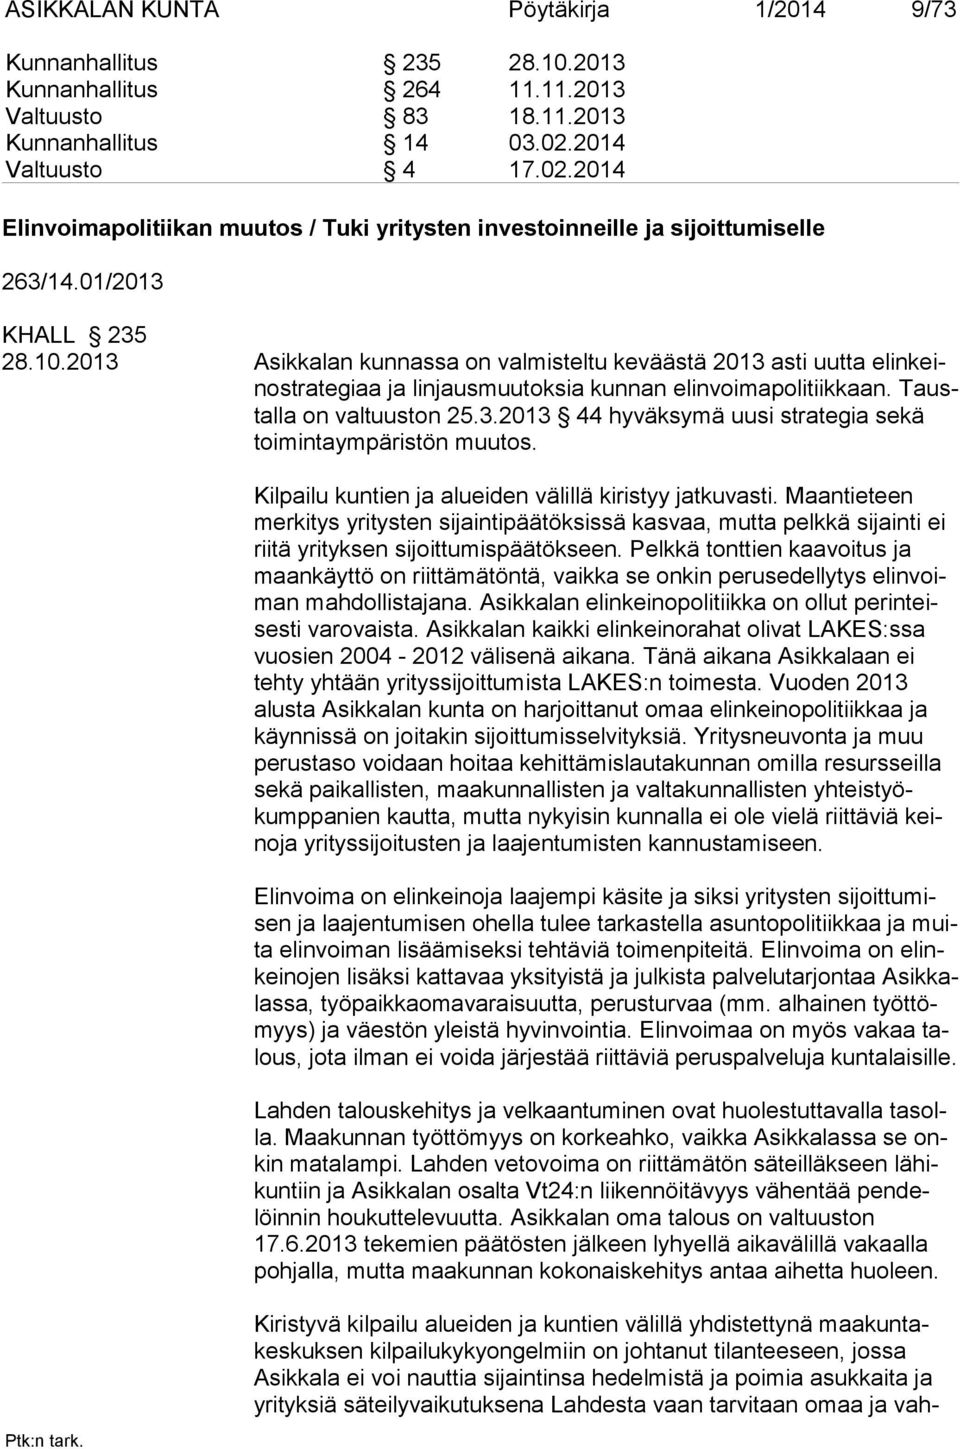 2013 Asikkalan kunnassa on valmisteltu keväästä 2013 asti uutta elinkeinostrategiaa ja lin jaus muutoksia kunnan elinvoimapolitiikkaan. Taustalla on valtuus ton 25.3.2013 44 hyväksymä uusi strategia sekä toimintaympäris tön muutos.